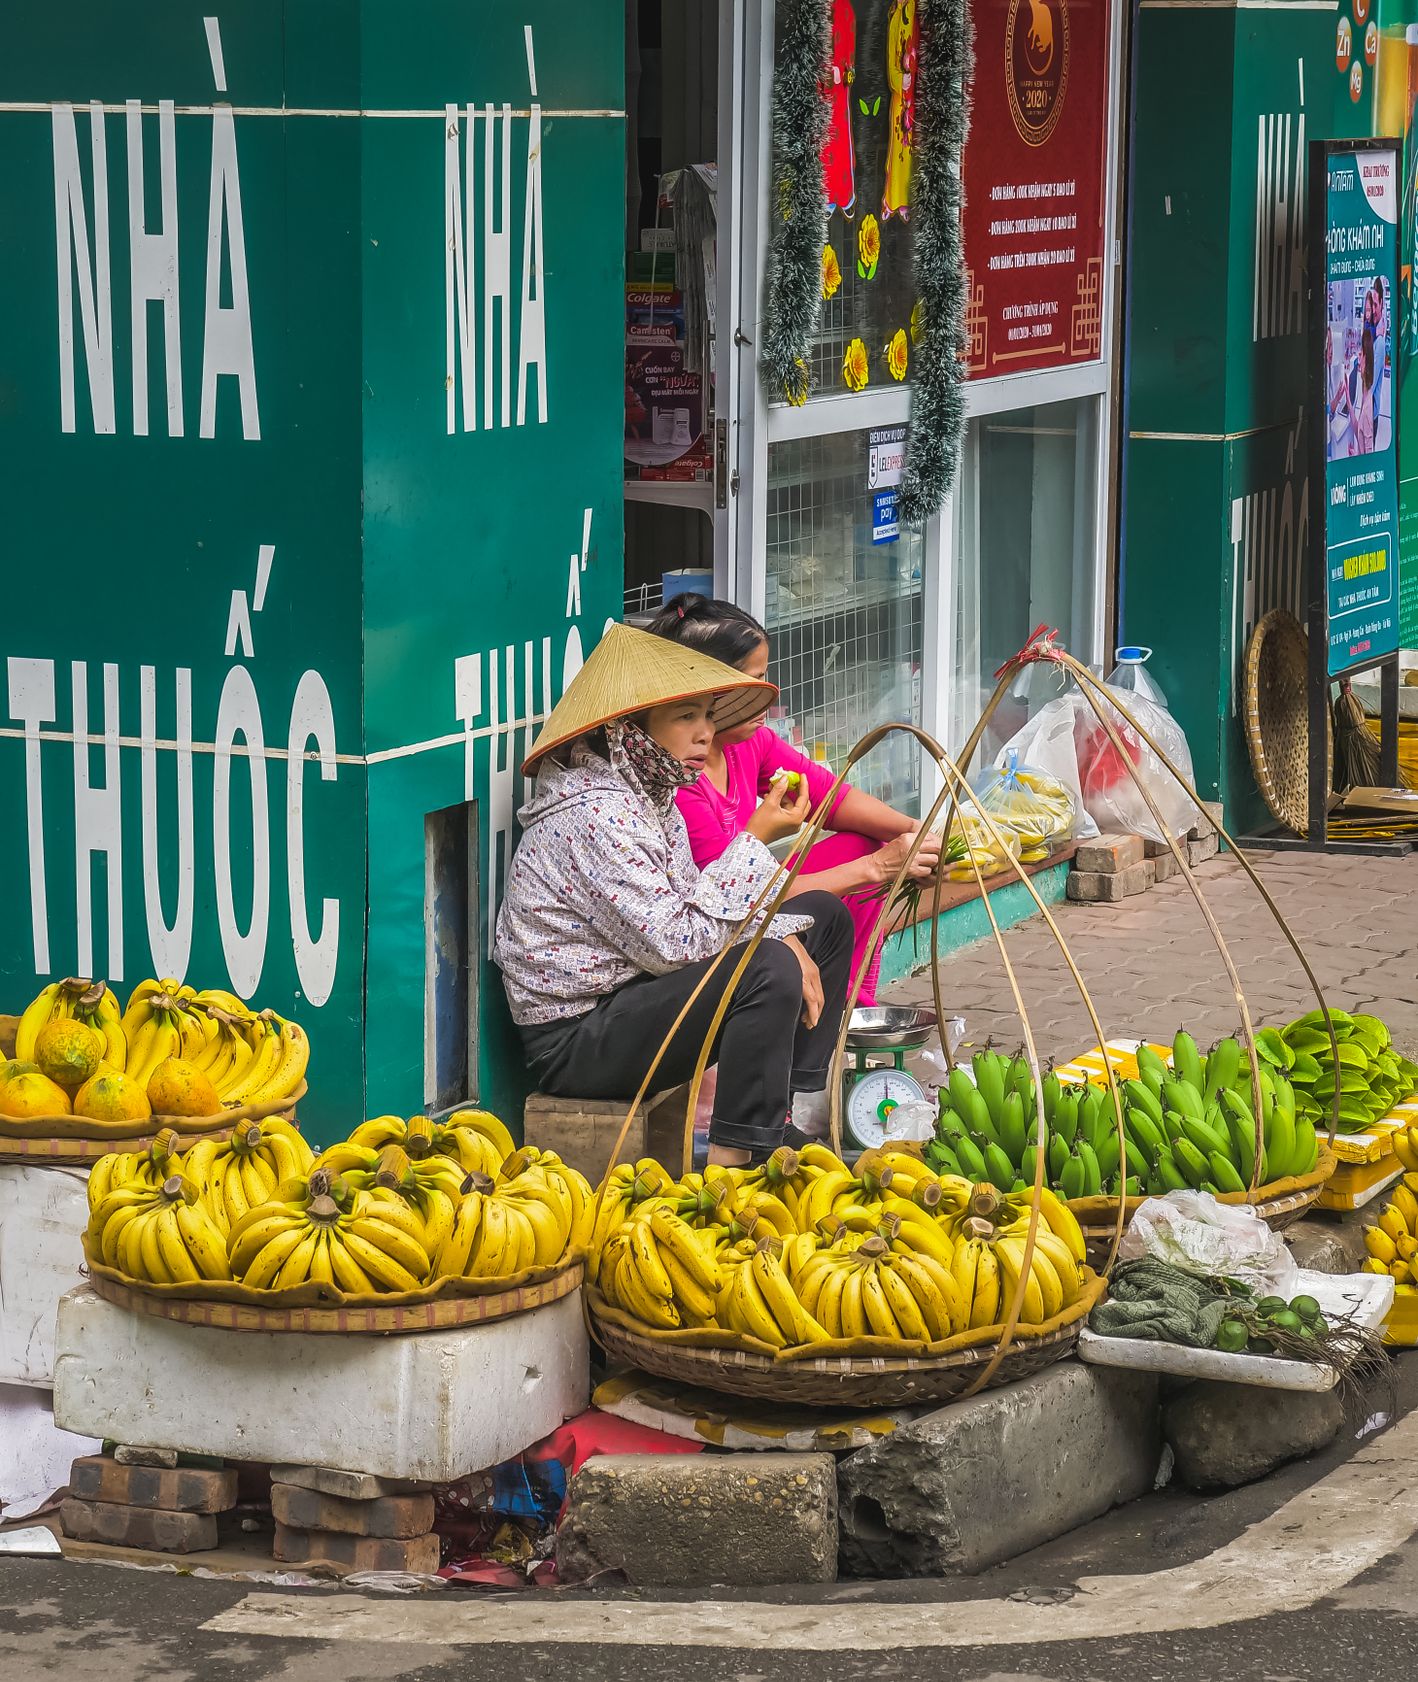 Kobieta sprzedająca owoce przy ulicy (fot. Bartek Zwiefka)